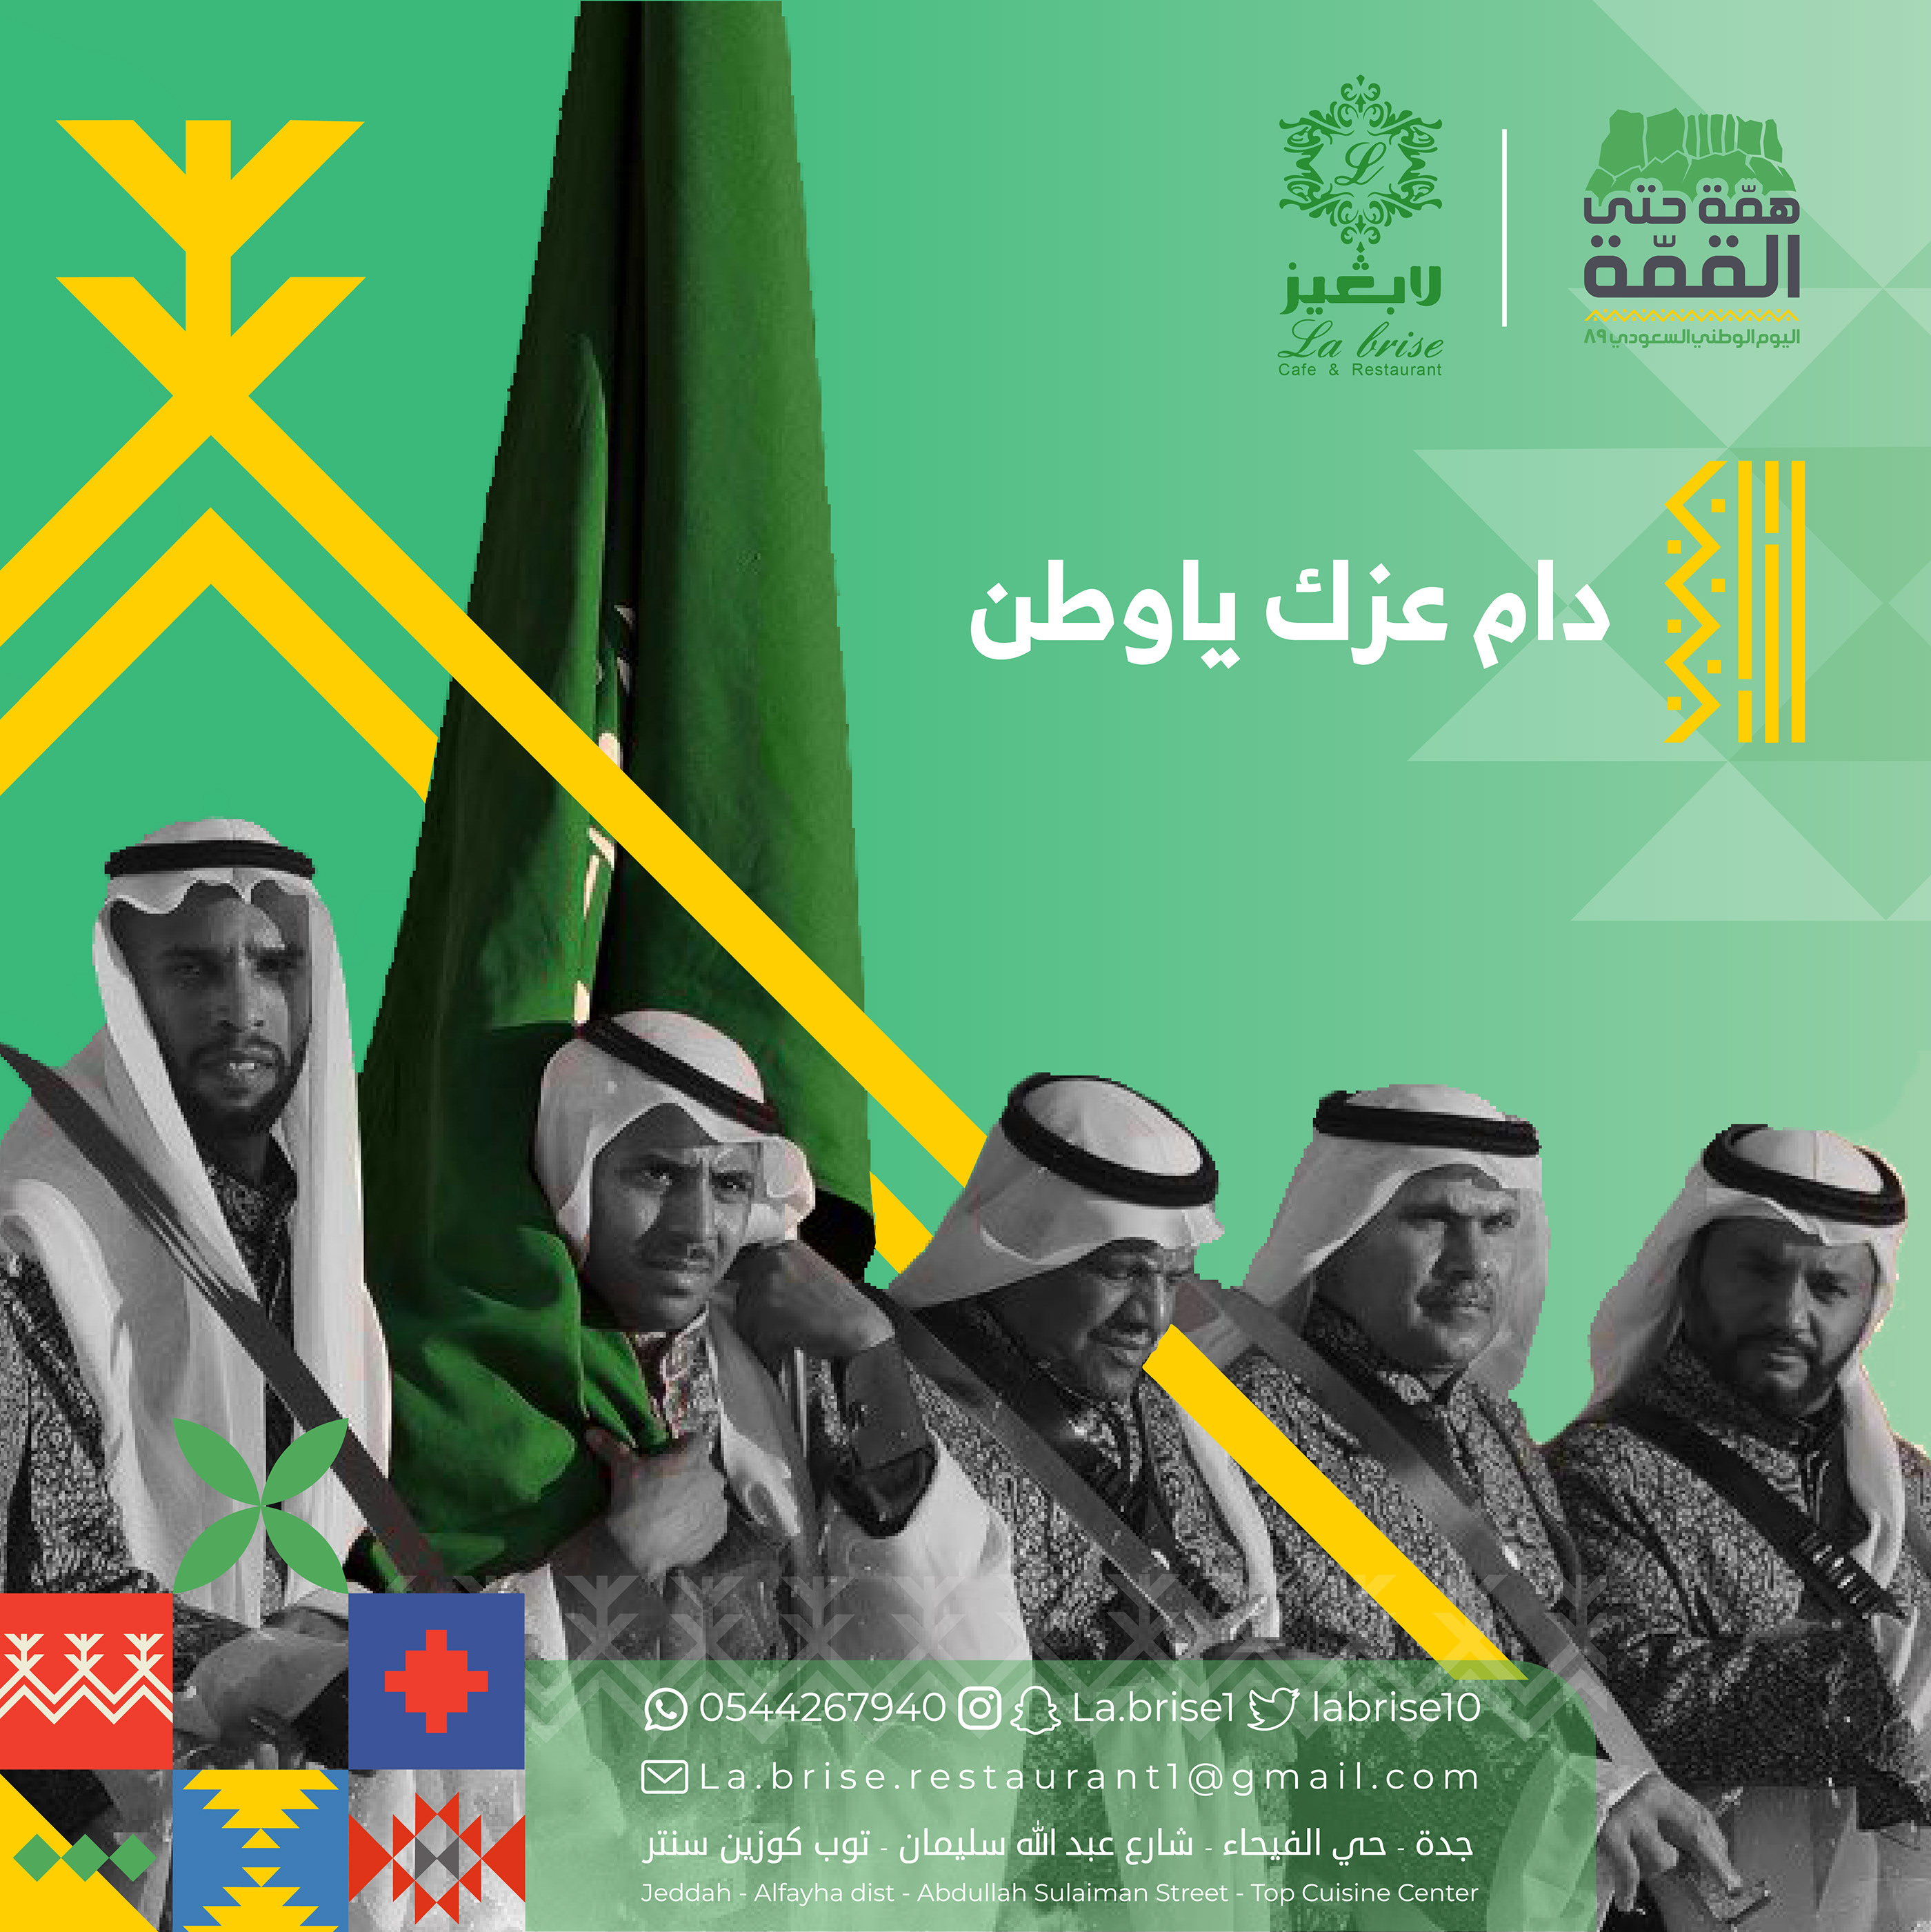 تصميم اليوم الوطني السعودي 89 Saudi national day on Behance